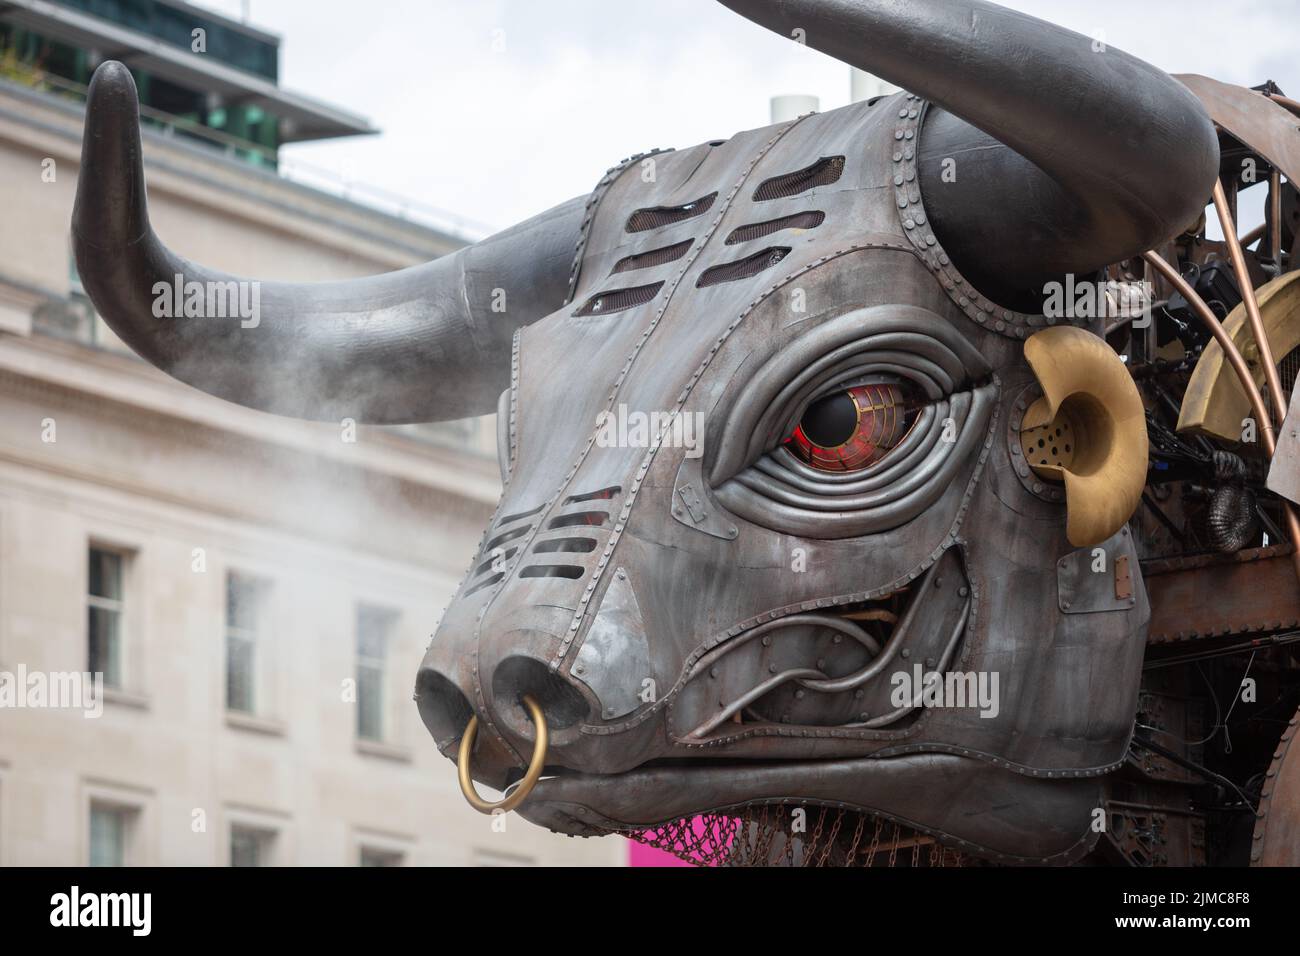 The Raging Bull - le taureau mécanique 10ft utilisé lors des Jeux du Commonwealth de Birmingham 2022, Birmingham, Royaume-Uni Banque D'Images